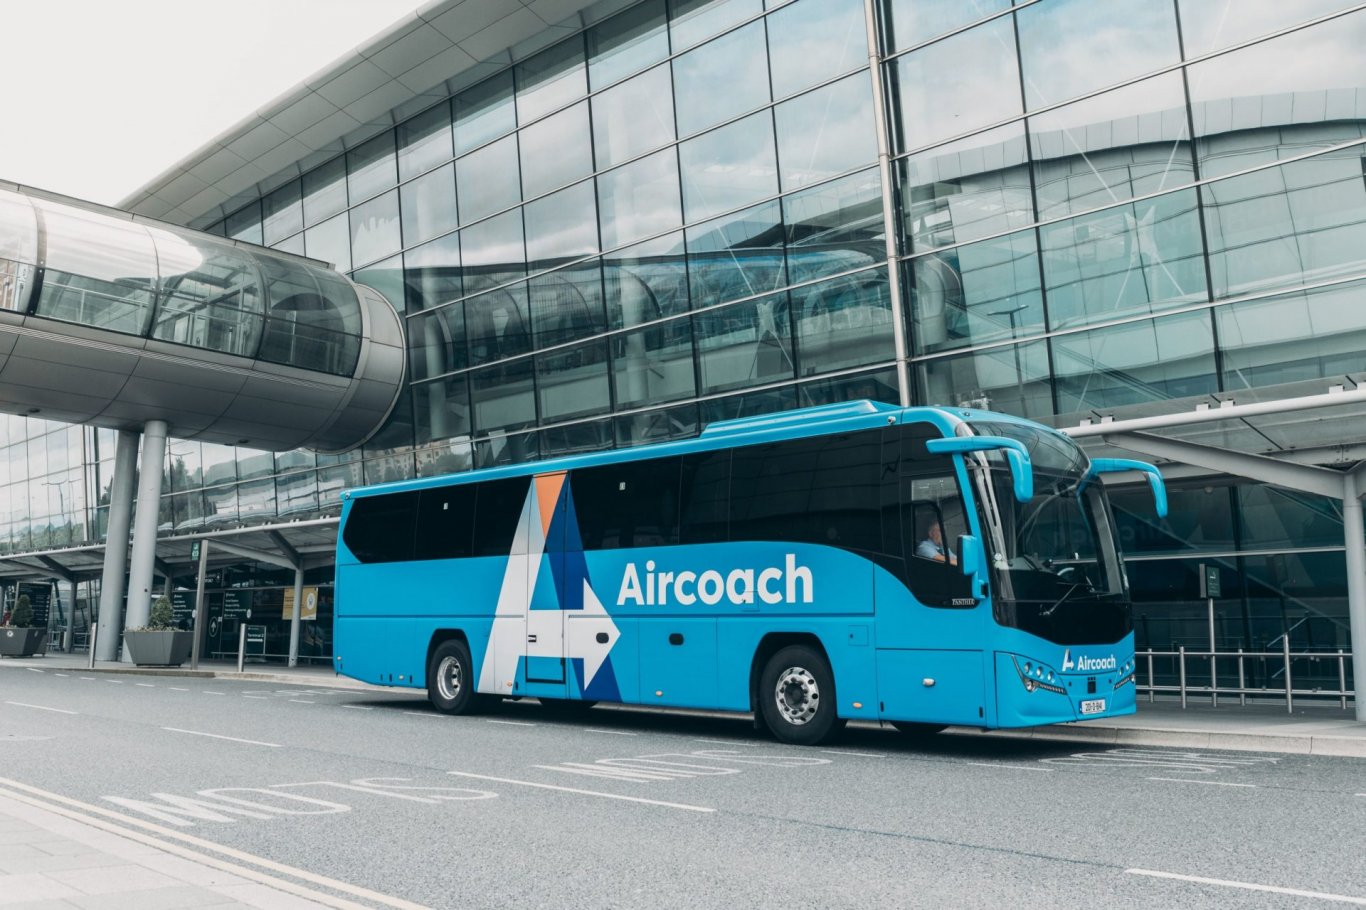 aircoach at terminal 2 dublin airport